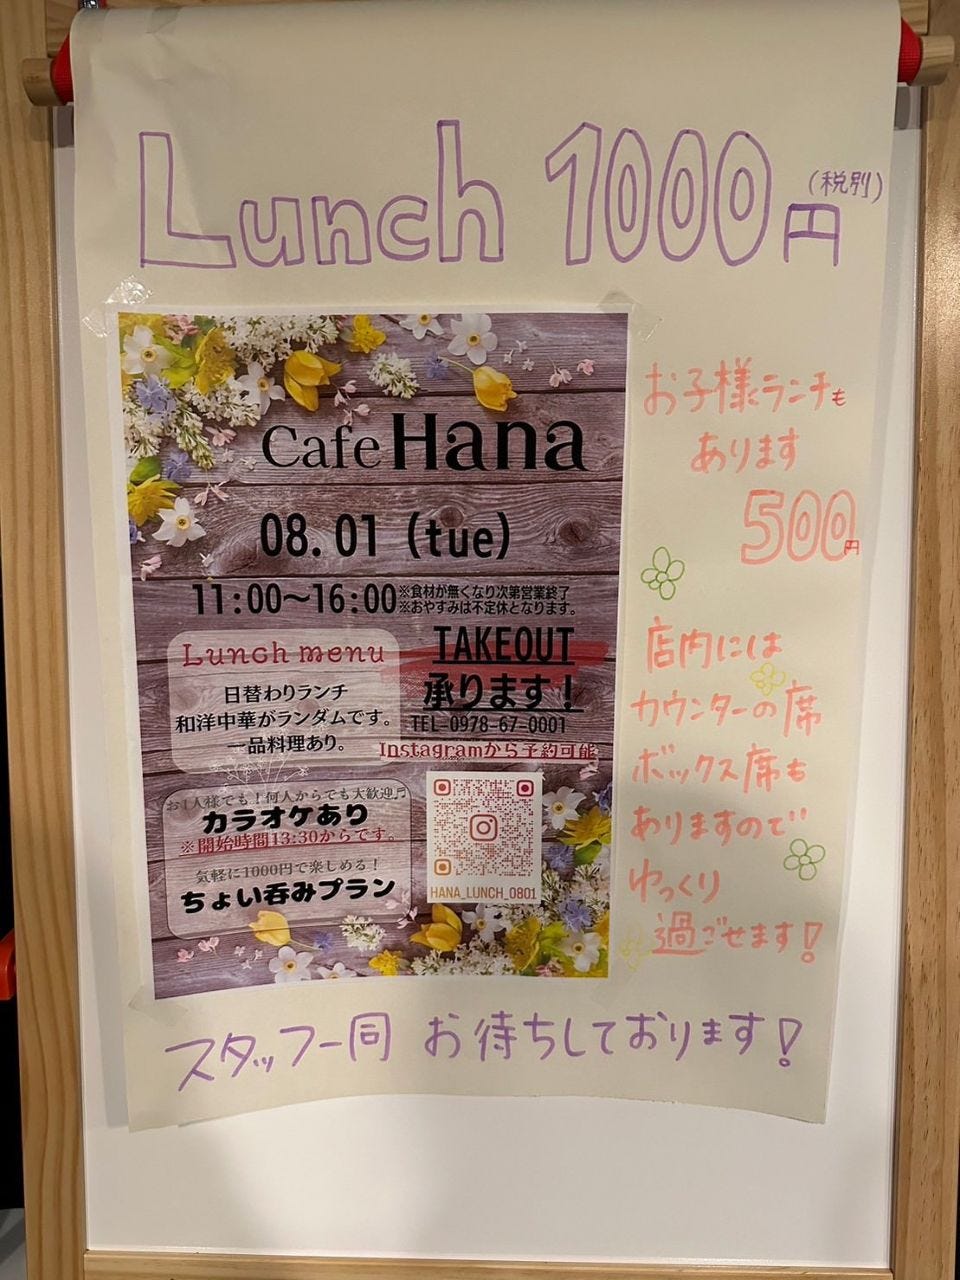 Cafe Hana image